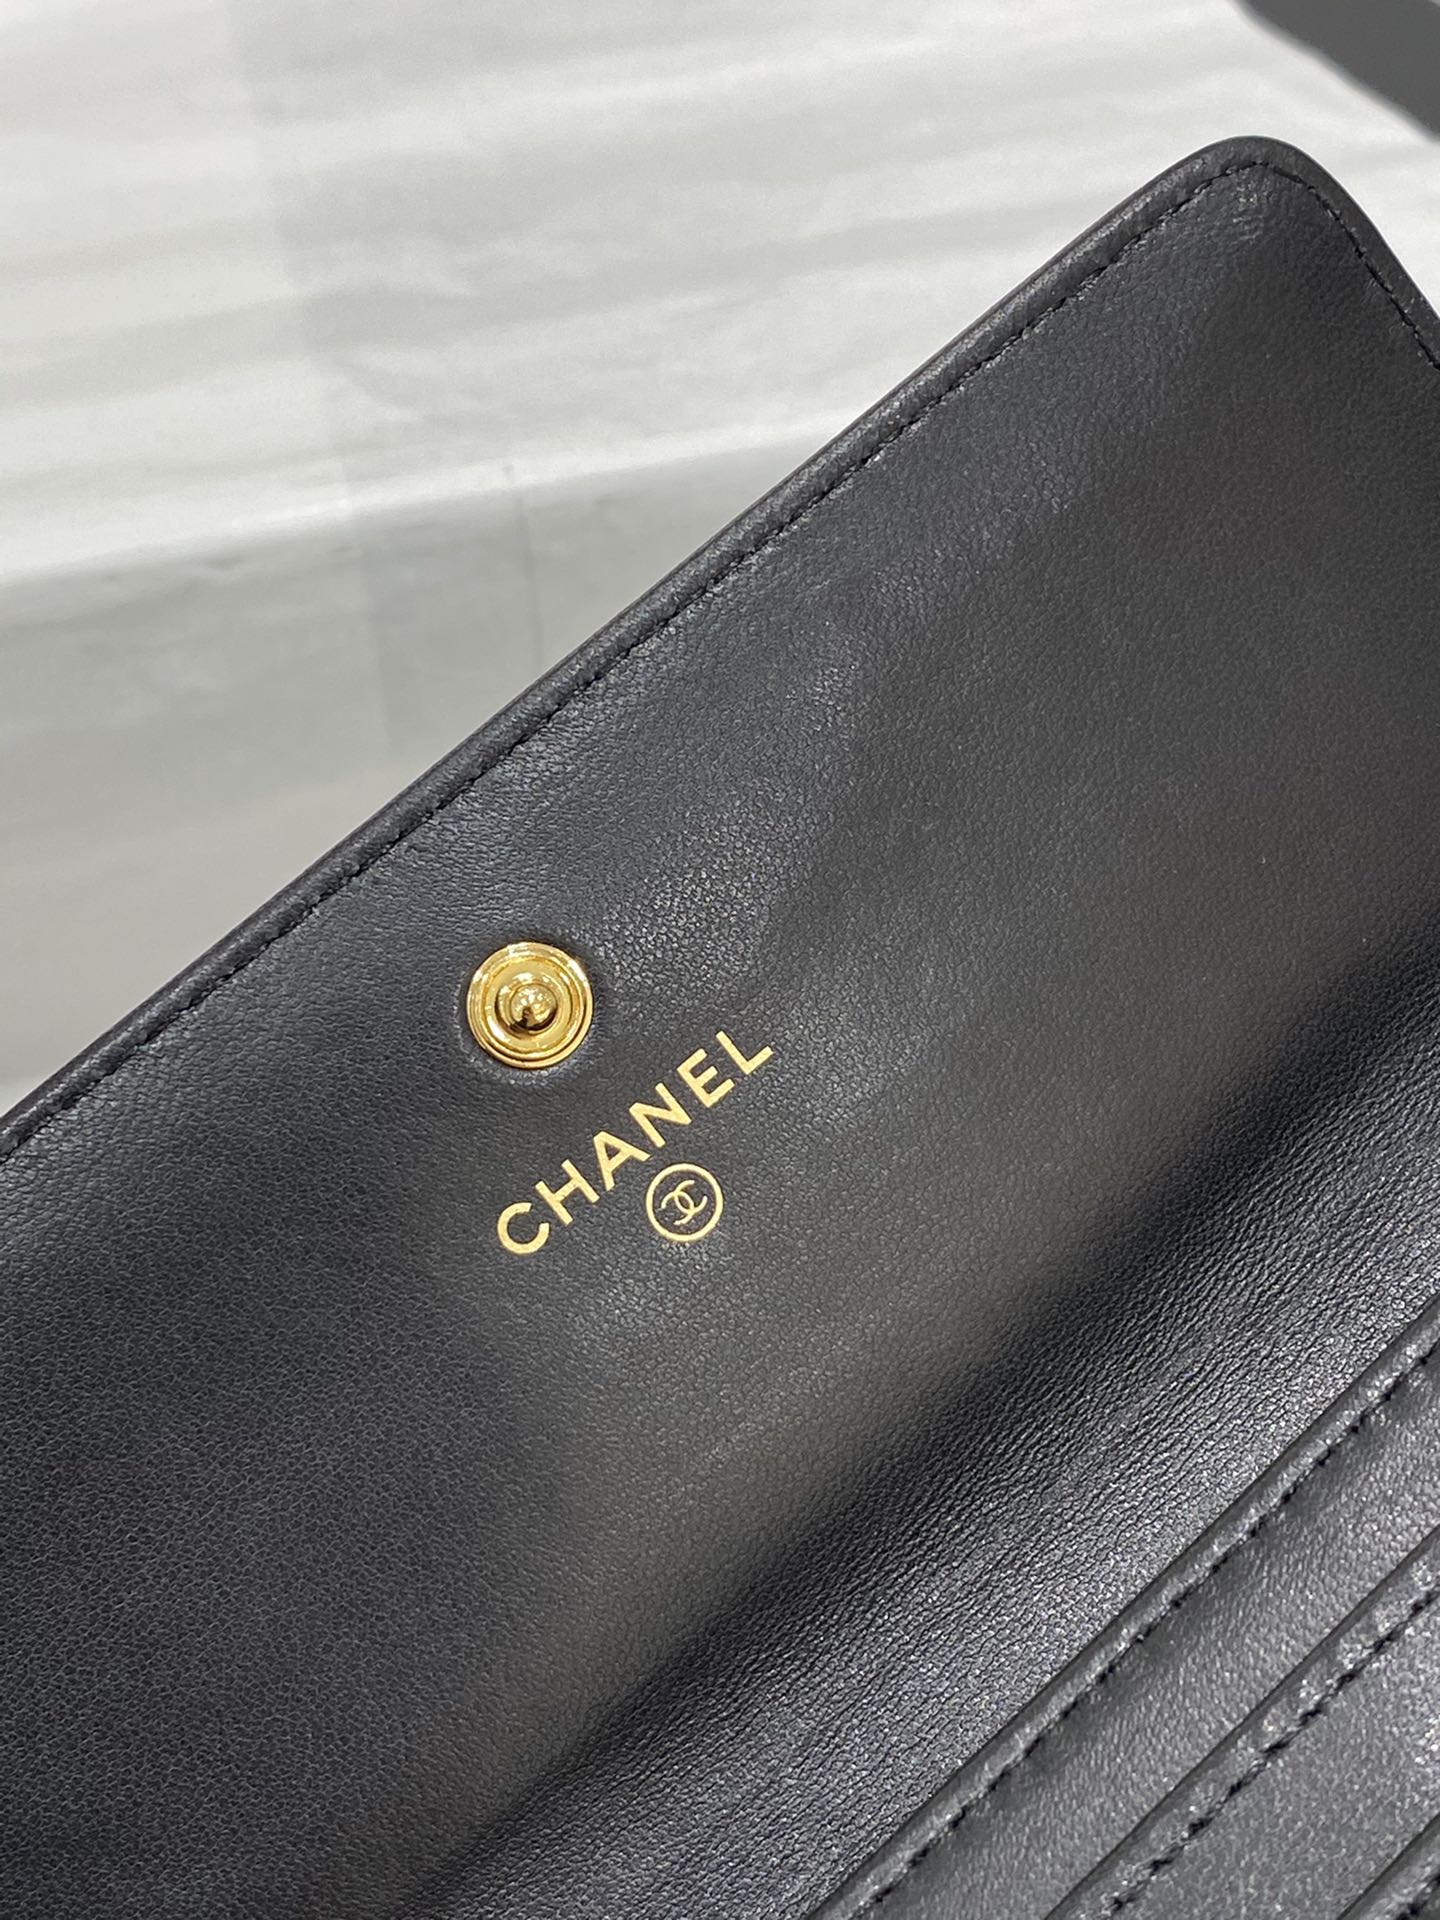 Chanel cf系列两折翻盖长款钱包 全新设计→ 大菱格 大双C编织logo 小羊皮 10*19.5*2.5cm